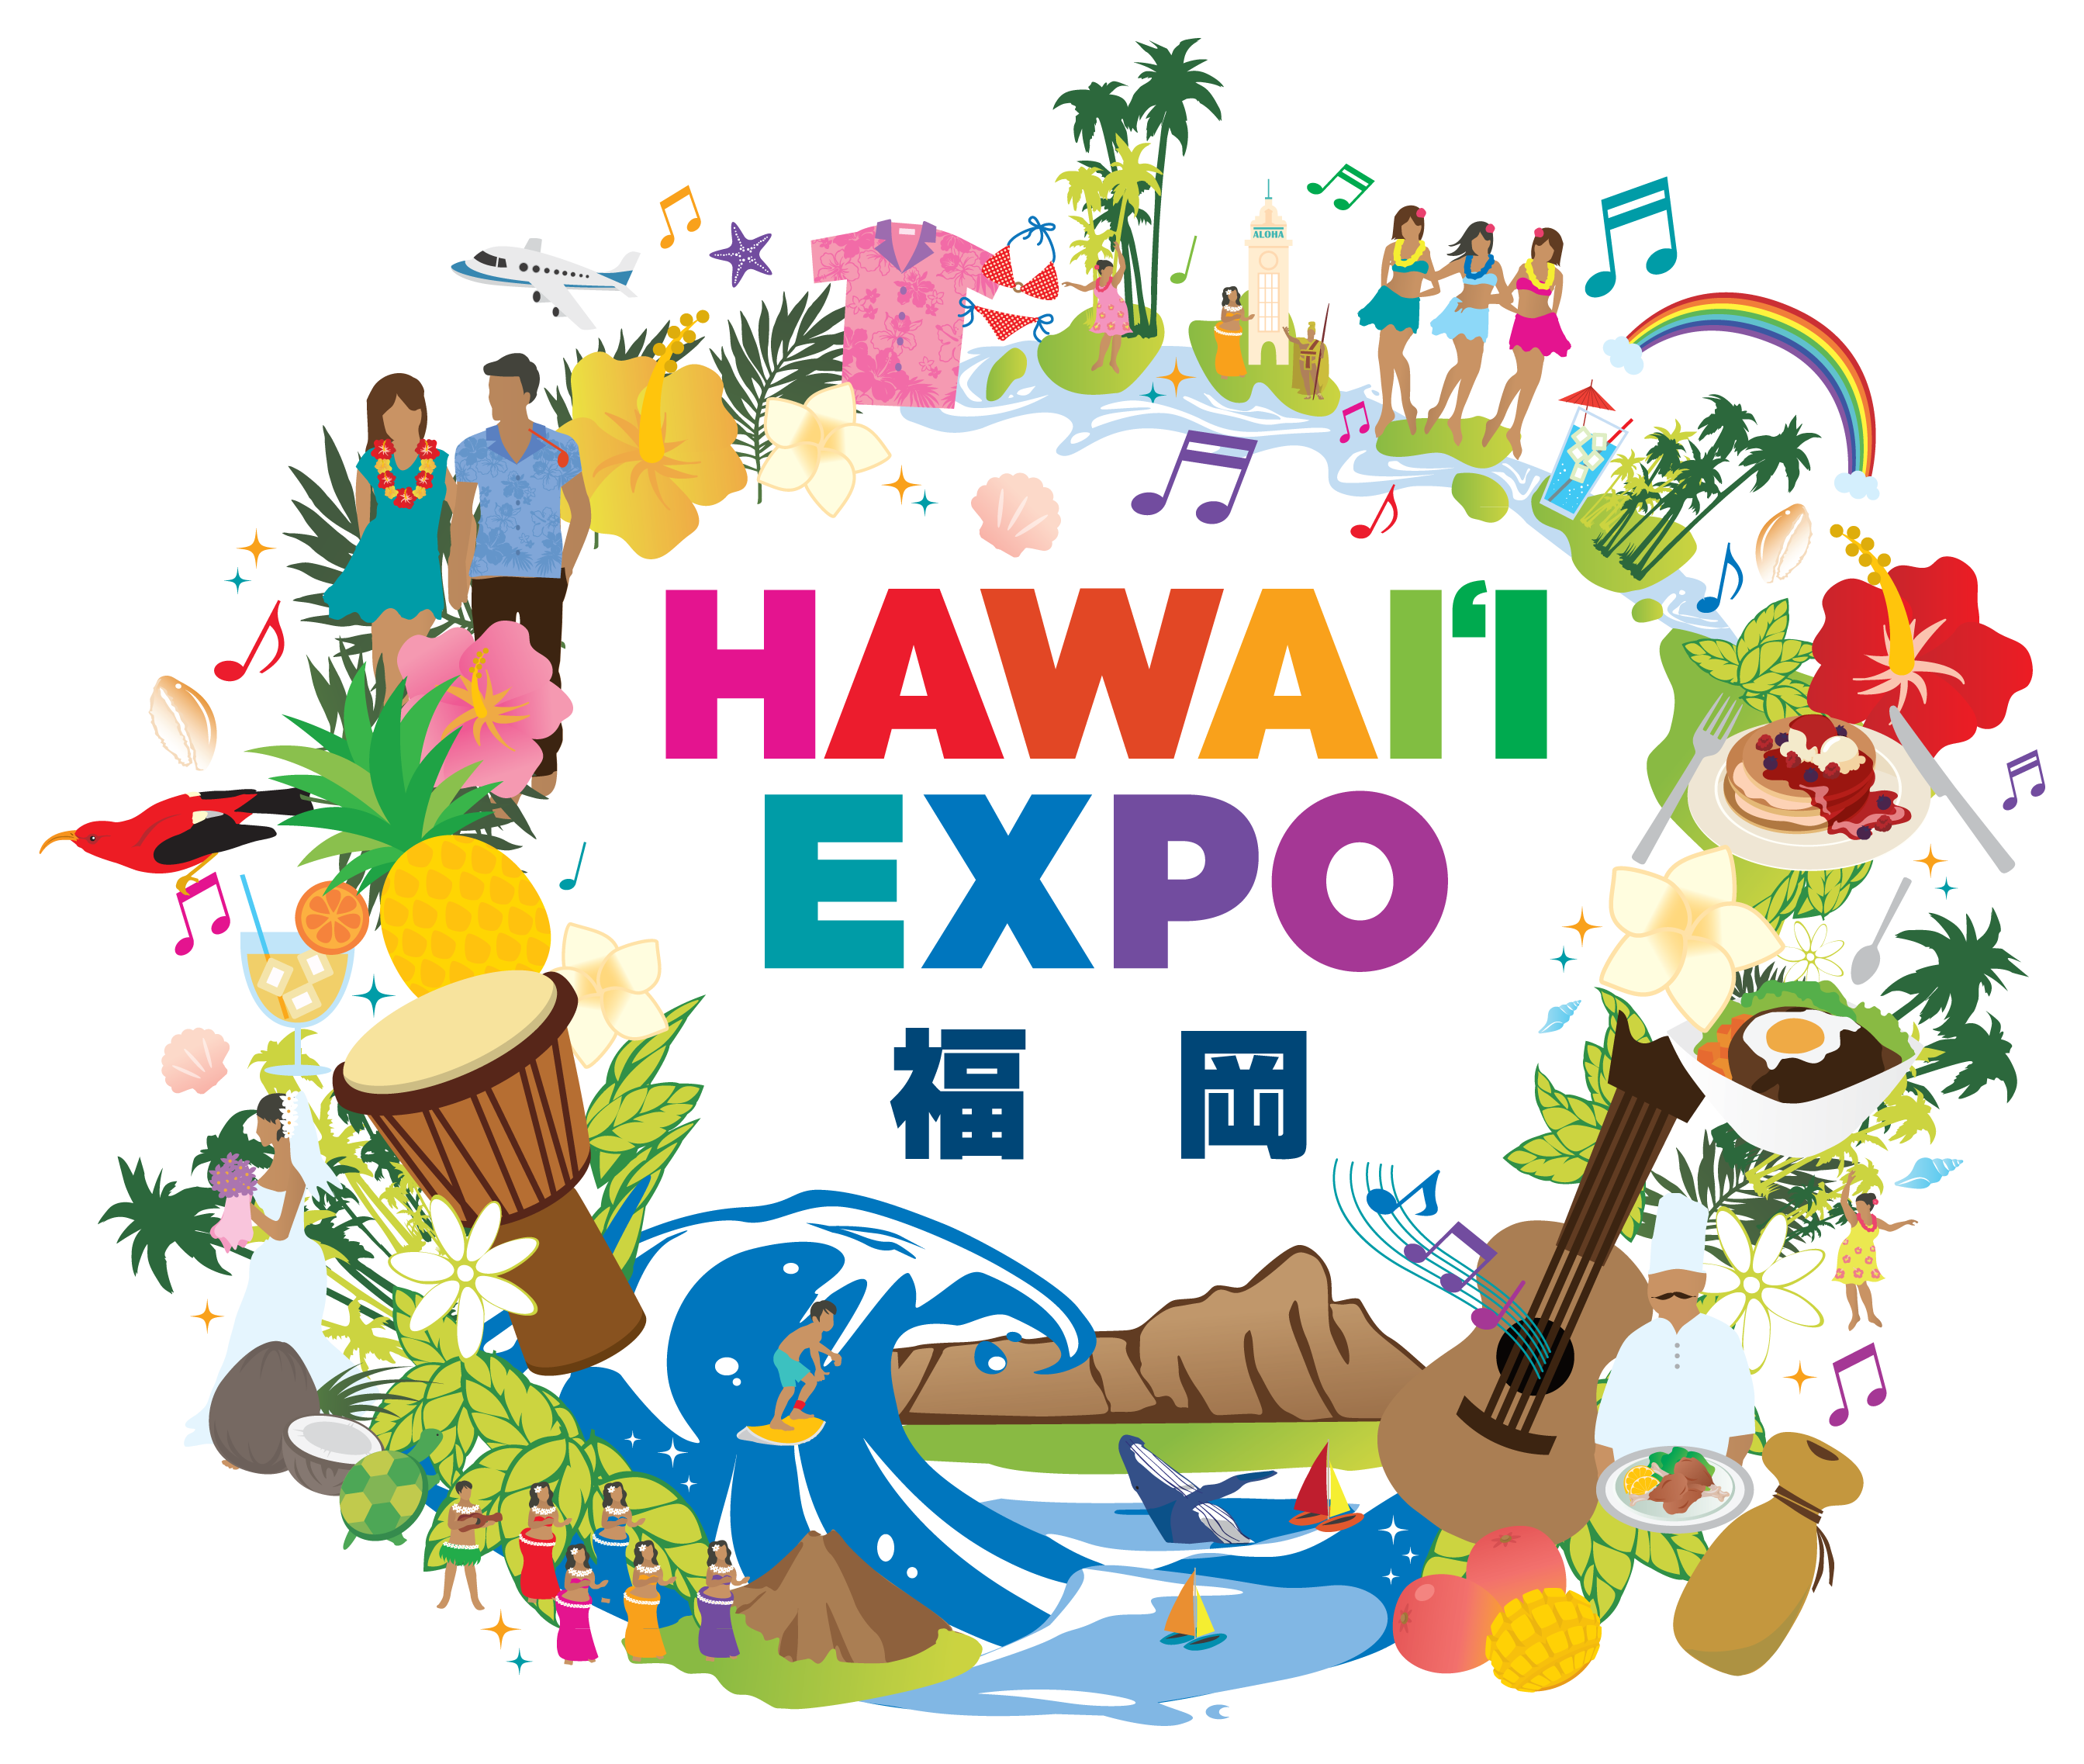 ハワイ州観光局主催 Hawaii Expo 今年は 福岡 天神で6 22 6 23に開催 ハワイ州観光局のプレスリリース